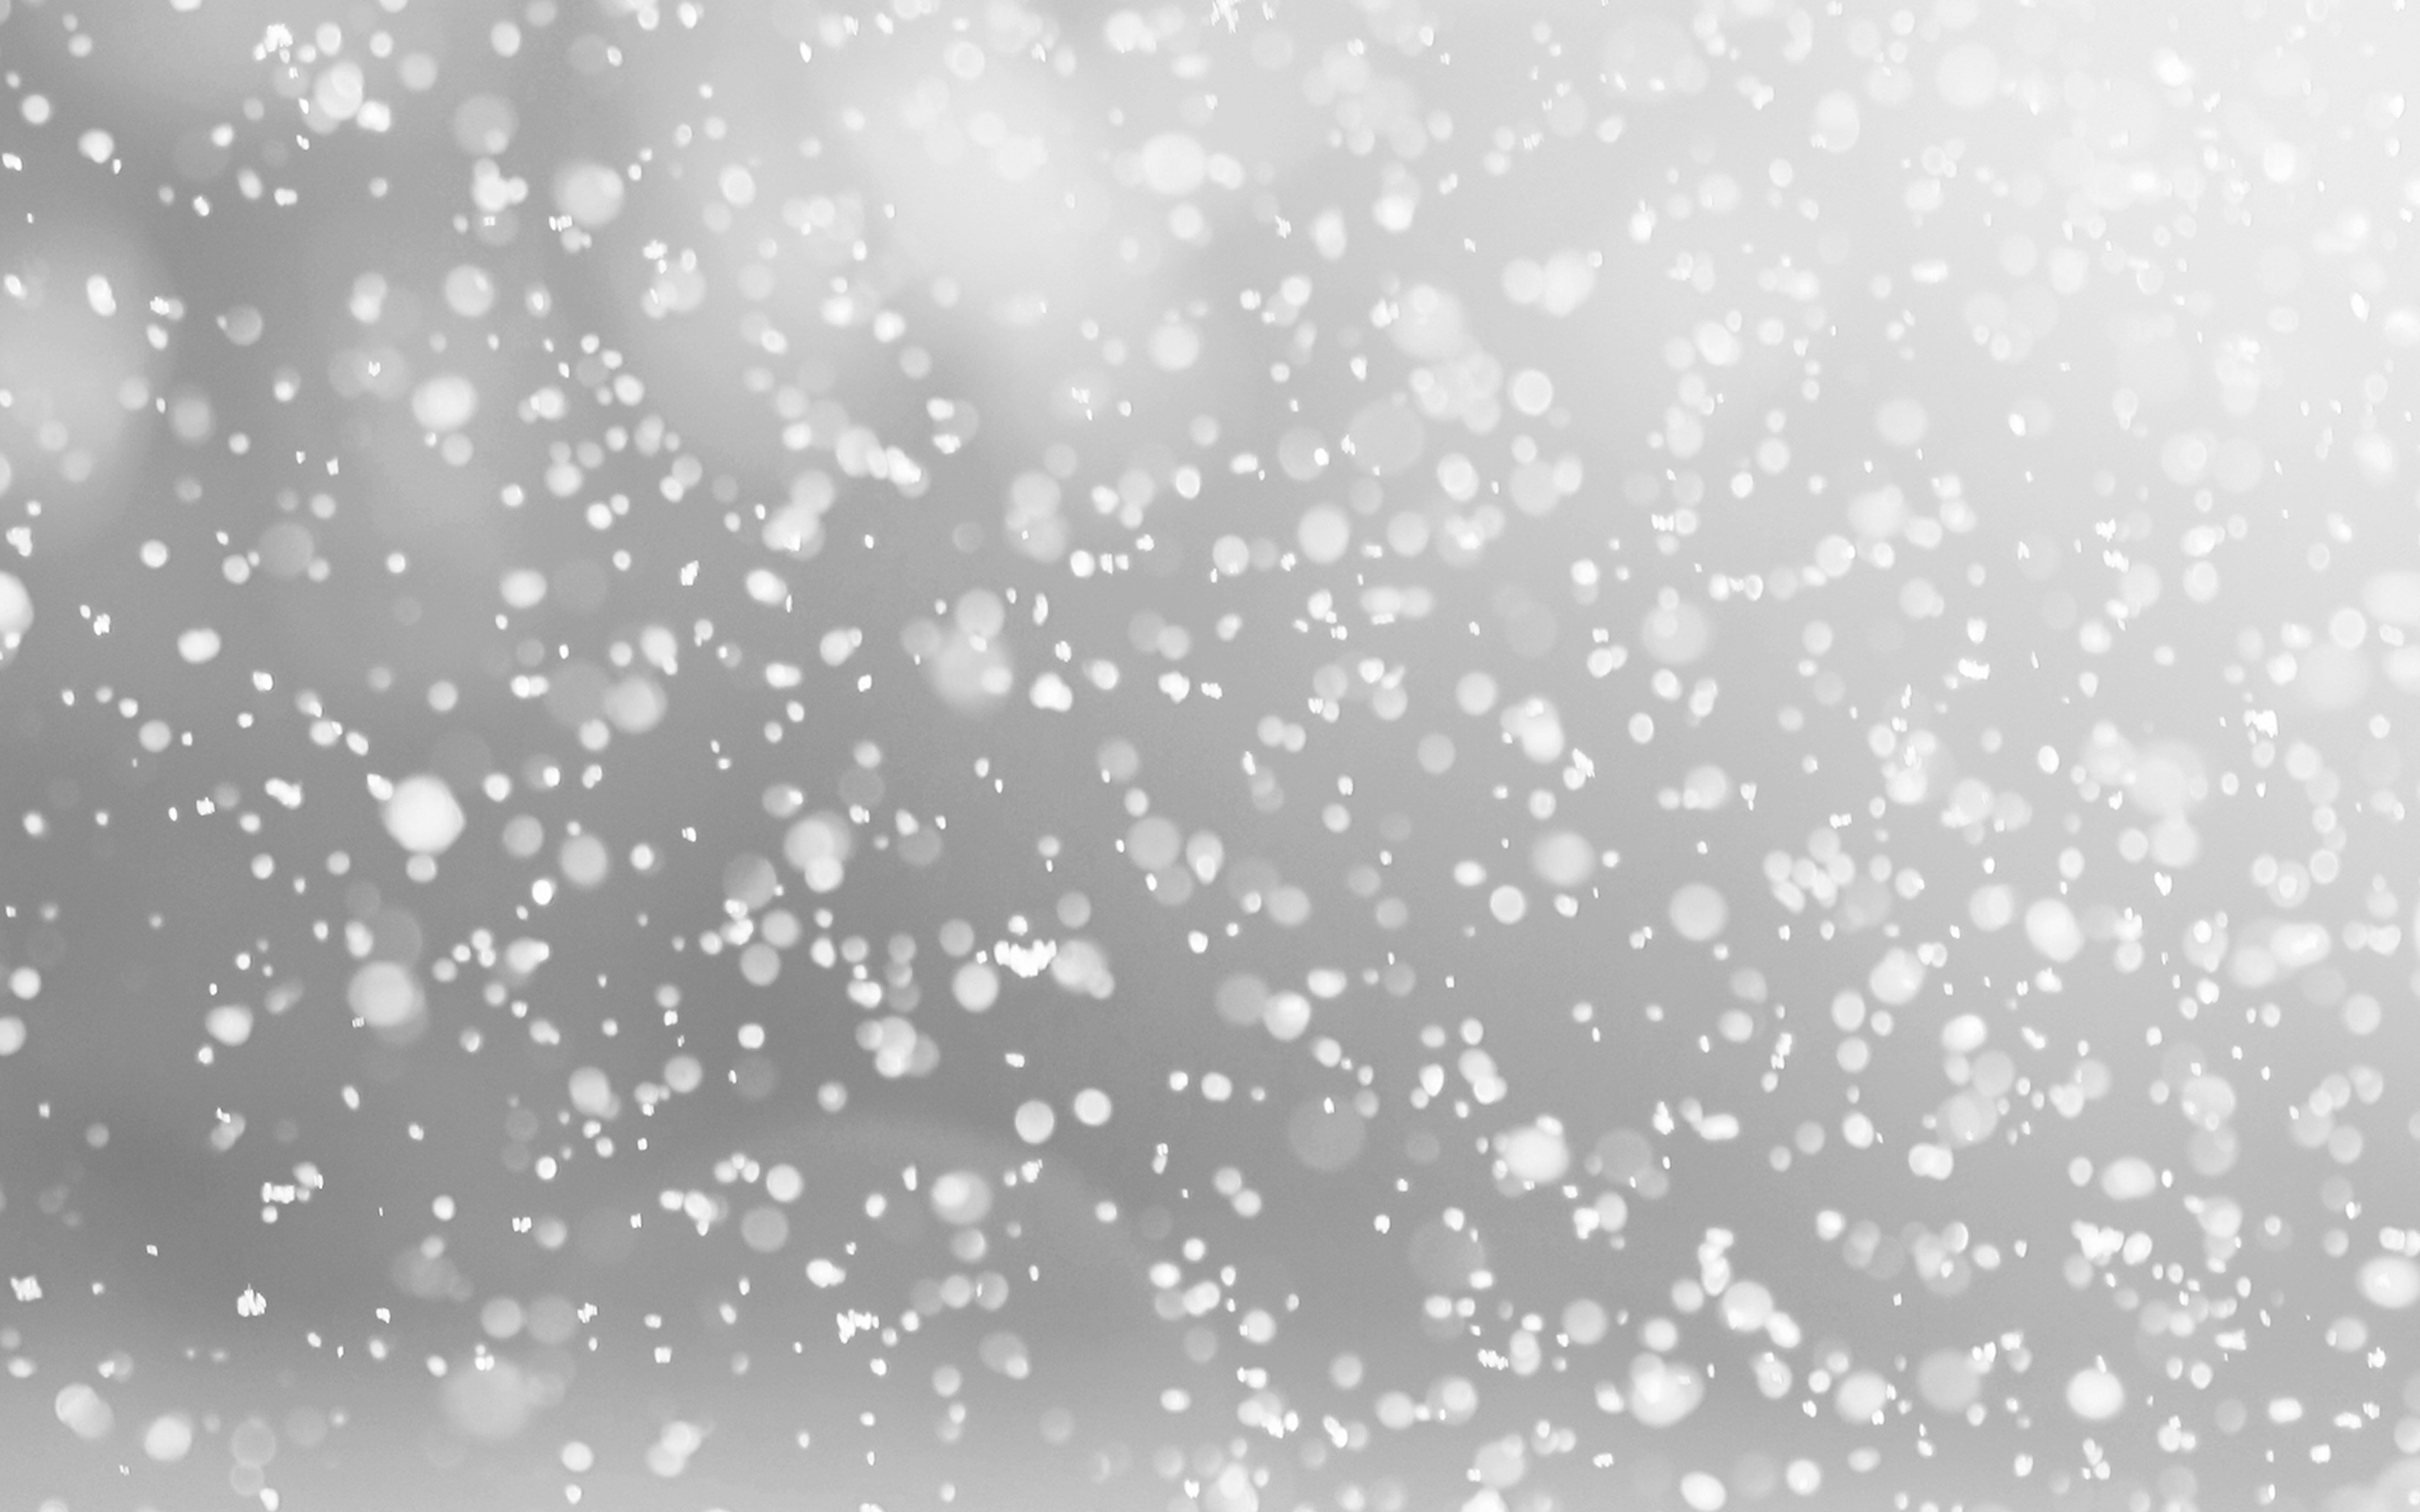 Хлопьями снегопада. Эффект снега. Снег для фотошопа. Боке снег. Эффект падающего снега.